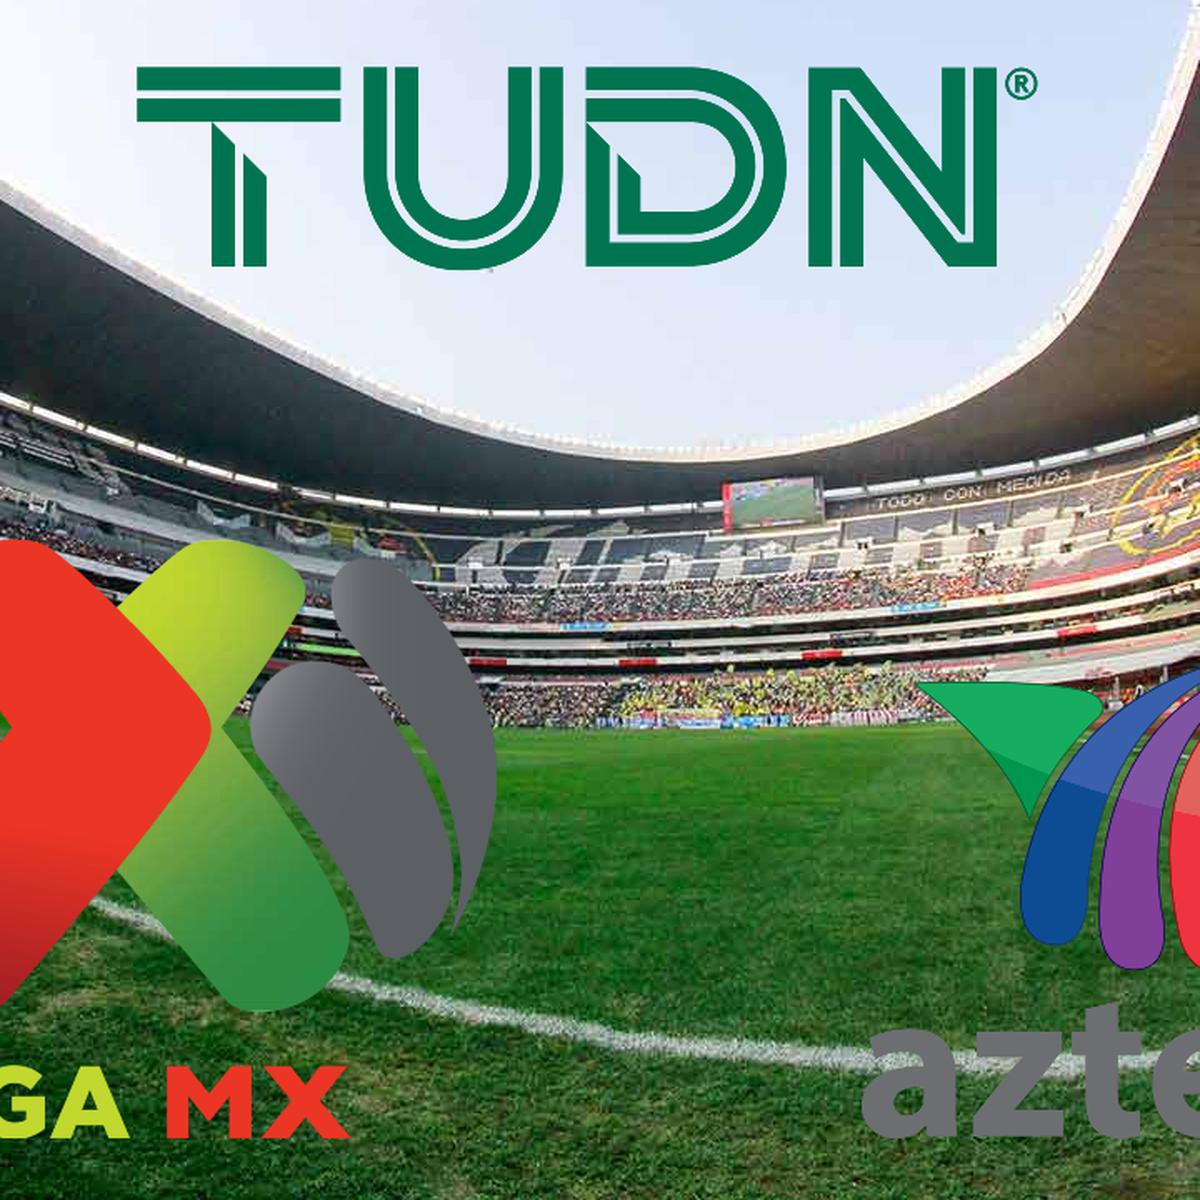 Hoy Aqui Gratis Ver Tudn Y Azteca 7 Deportes En Vivo Sigue Monarcas Morelia Vs Toluca Y Tijuana Vs Santos Por El Torneo Clausura De La Liga Mx En Directo Todos